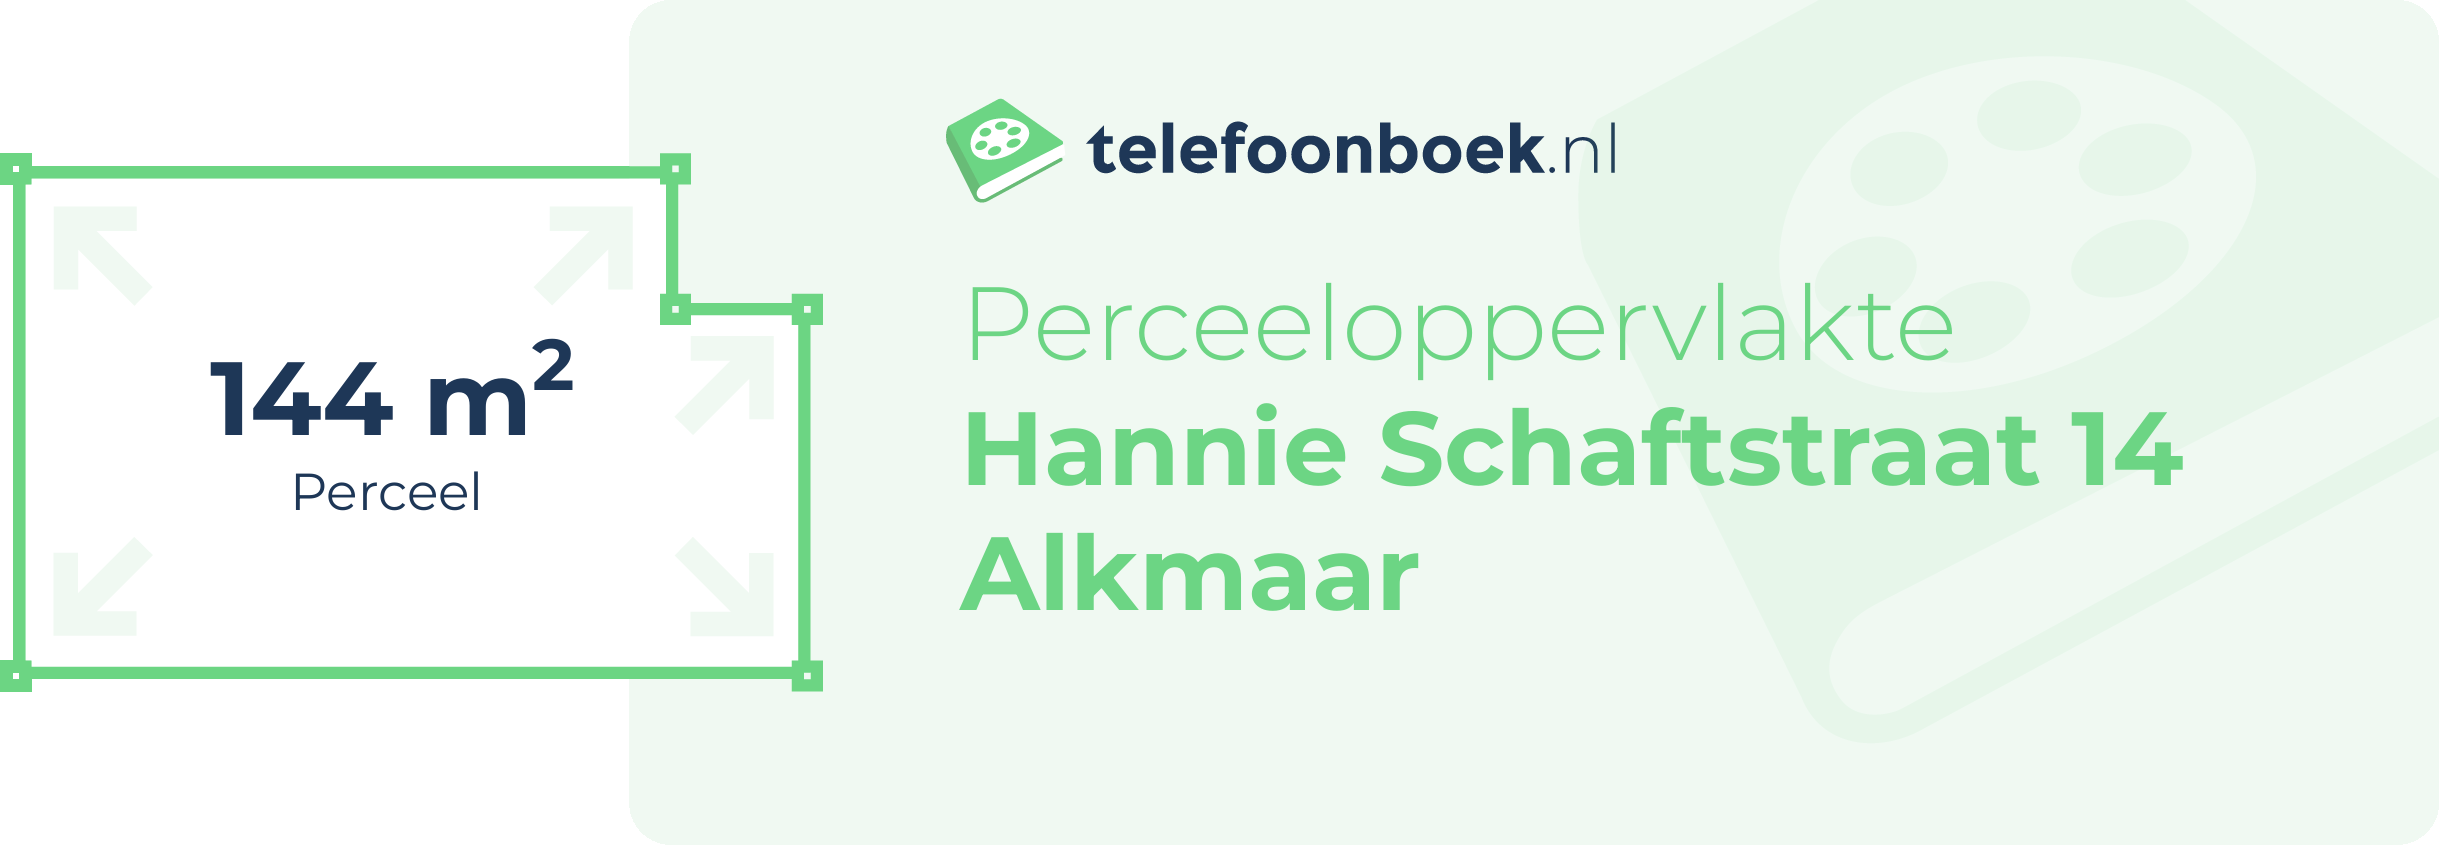 Perceeloppervlakte Hannie Schaftstraat 14 Alkmaar